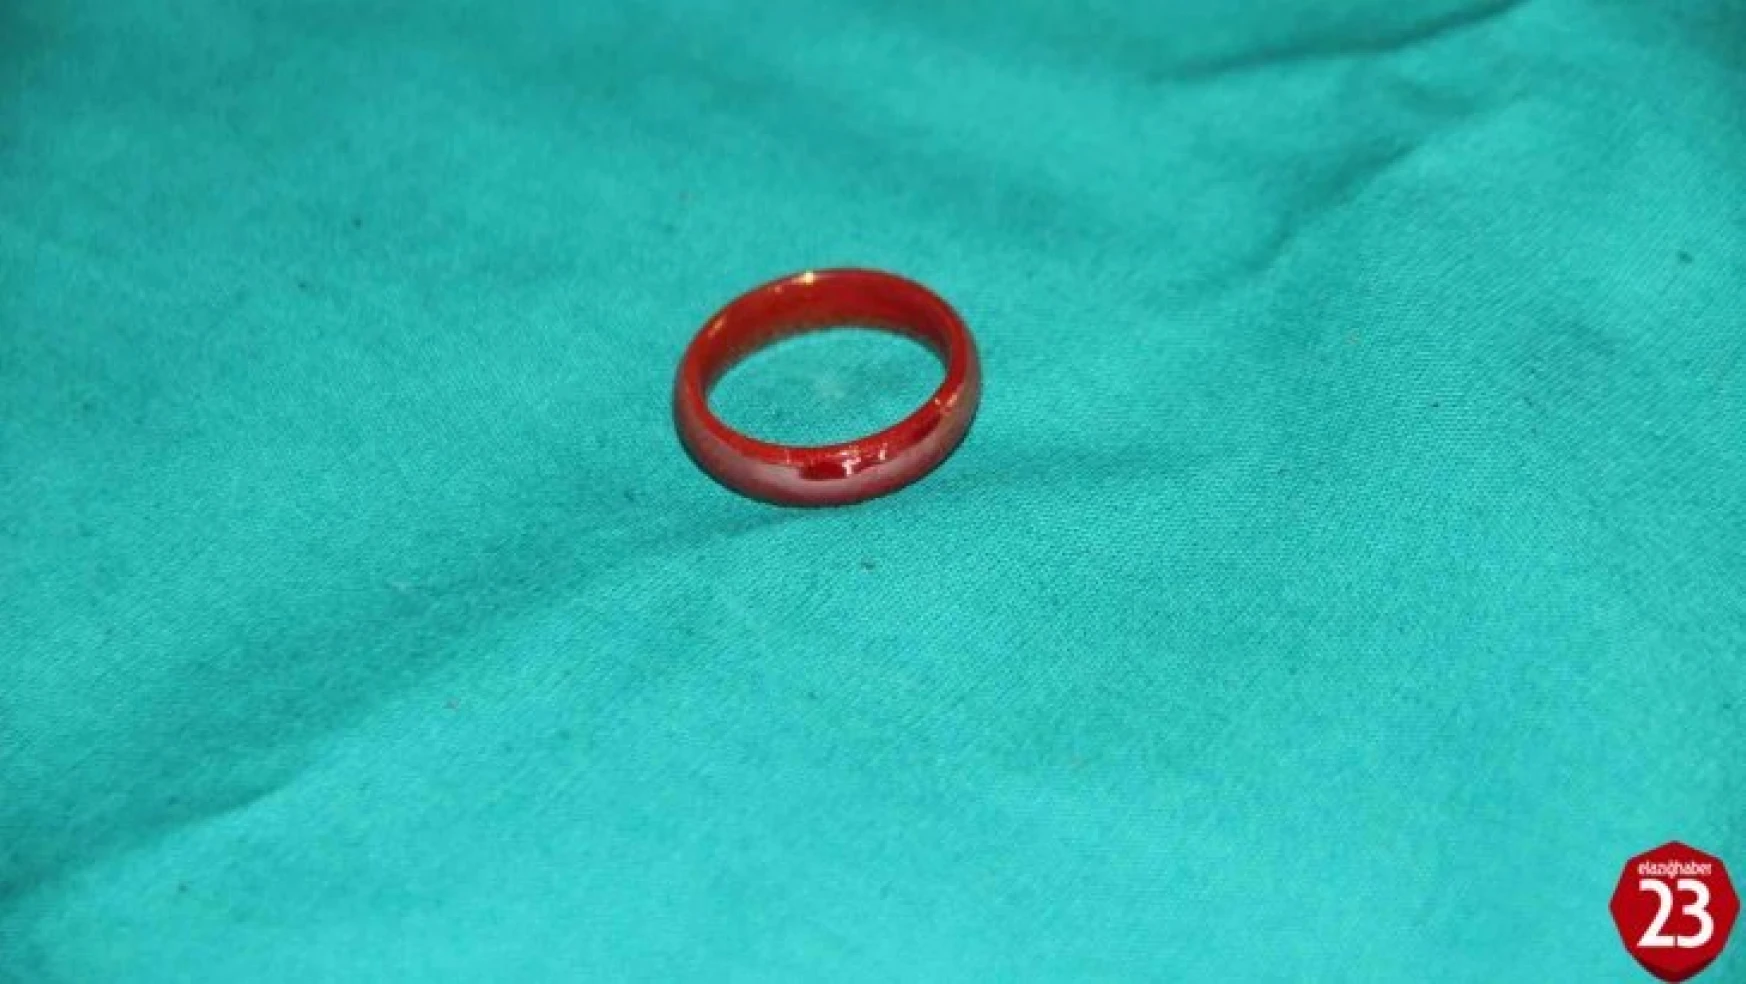 Oyun Oynarken Yerdeki Yüzüğü Yutan 3 Yaşındaki Çocuk Ölümden Döndü